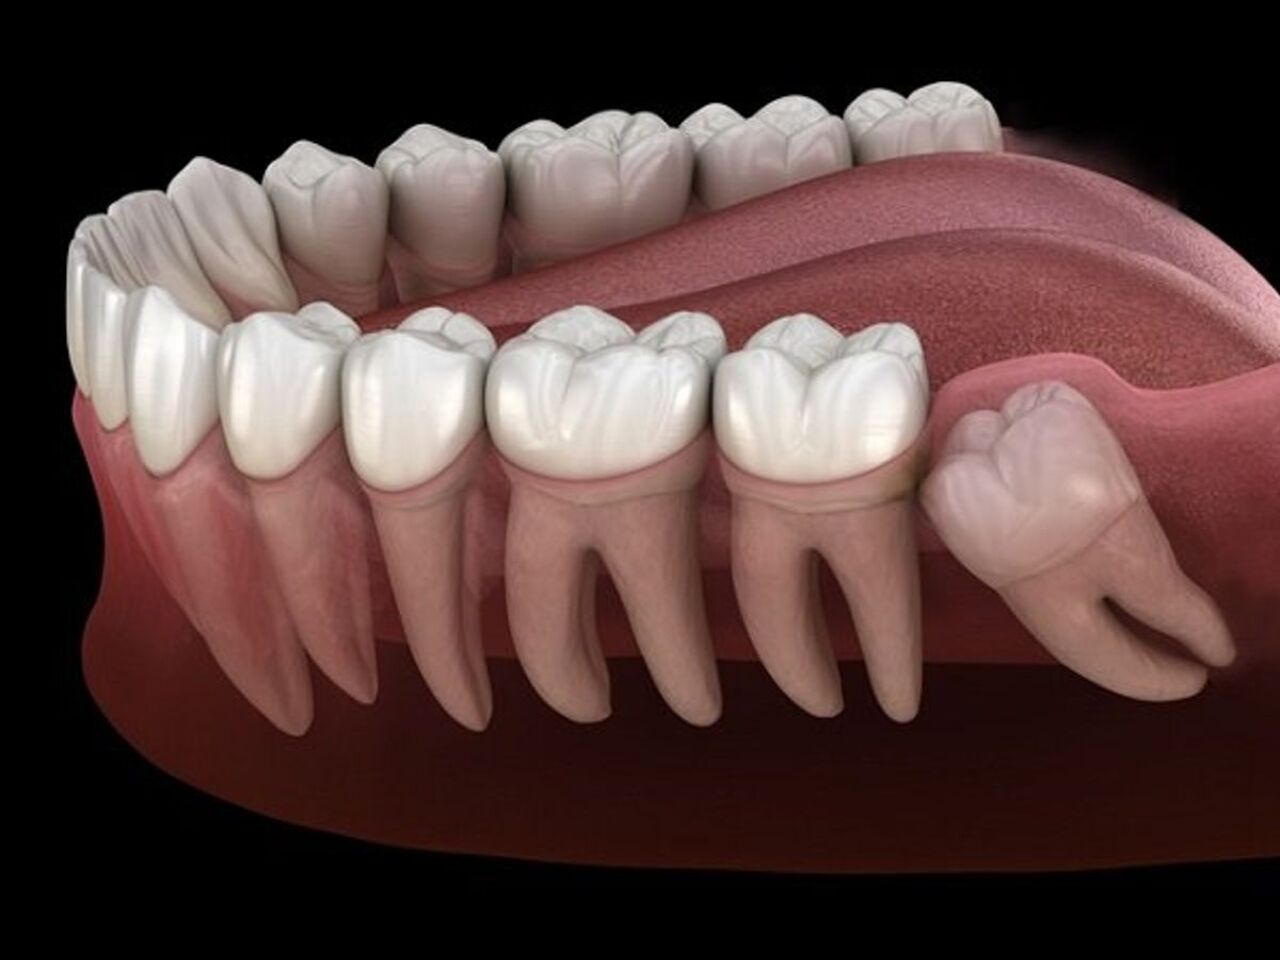 Khi nào nên đi khám nha khoa nếu nghi ngờ răng số 8 đang mọc ngầm?
